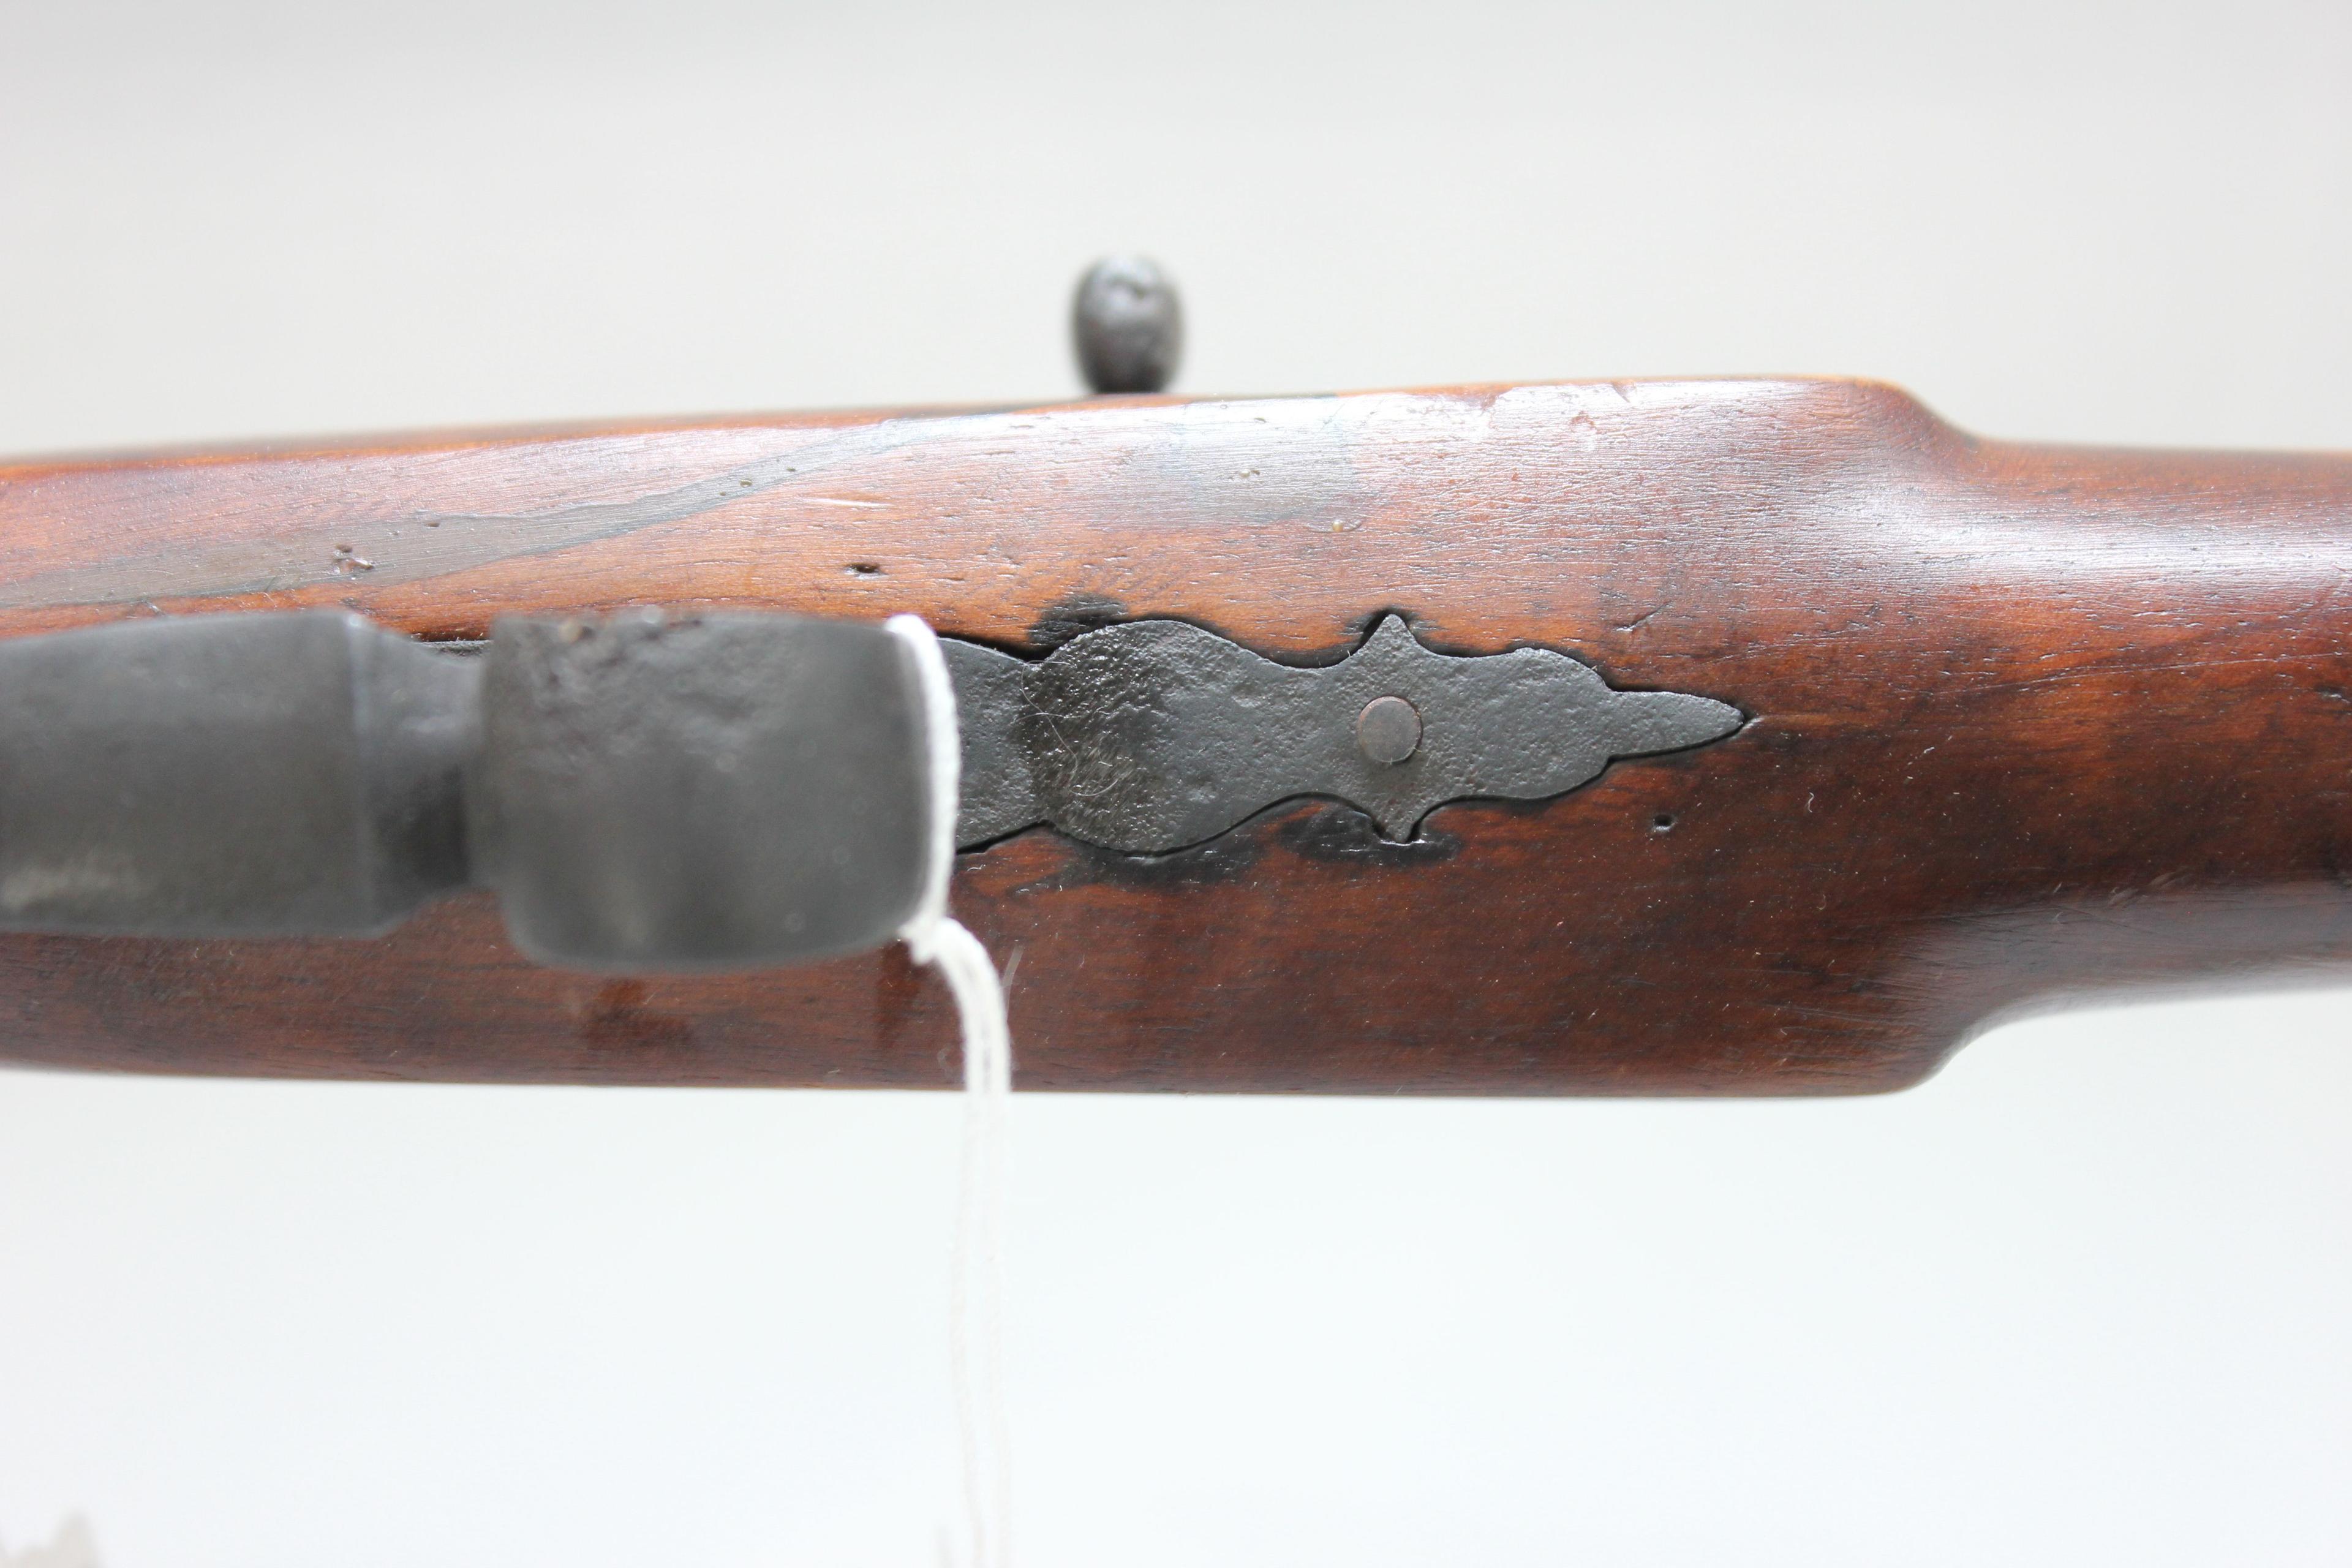 Flobert 6mm Cal. Flip Up Breech Loading Parlor Rifle w/23-1/4" Octagon BBL; Made in Belgium; SN N/A